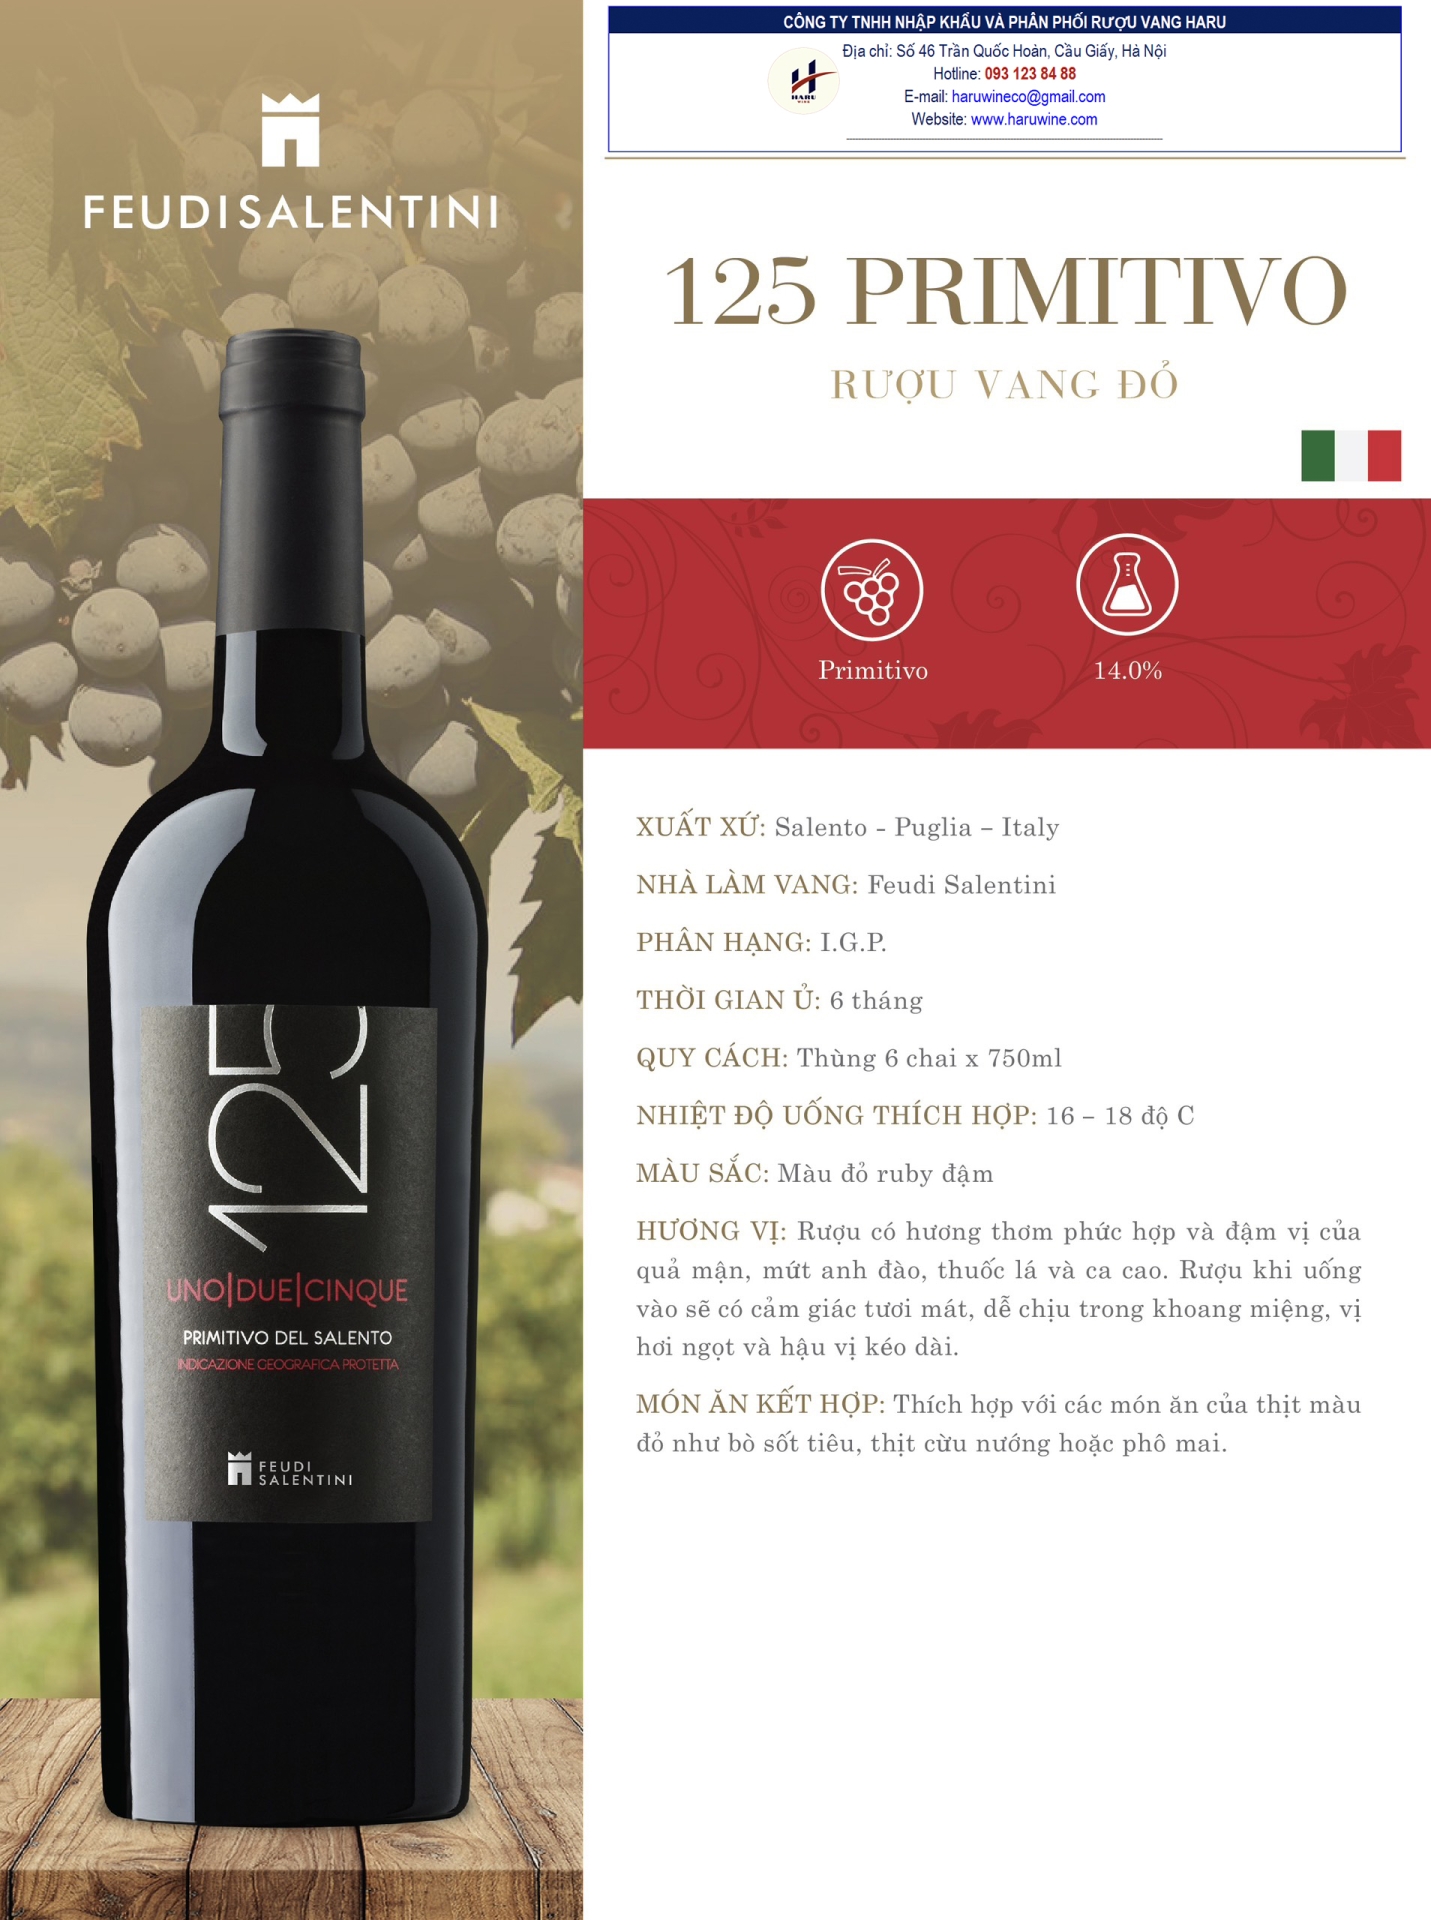 Rượu vang đỏ 125 Primitivo